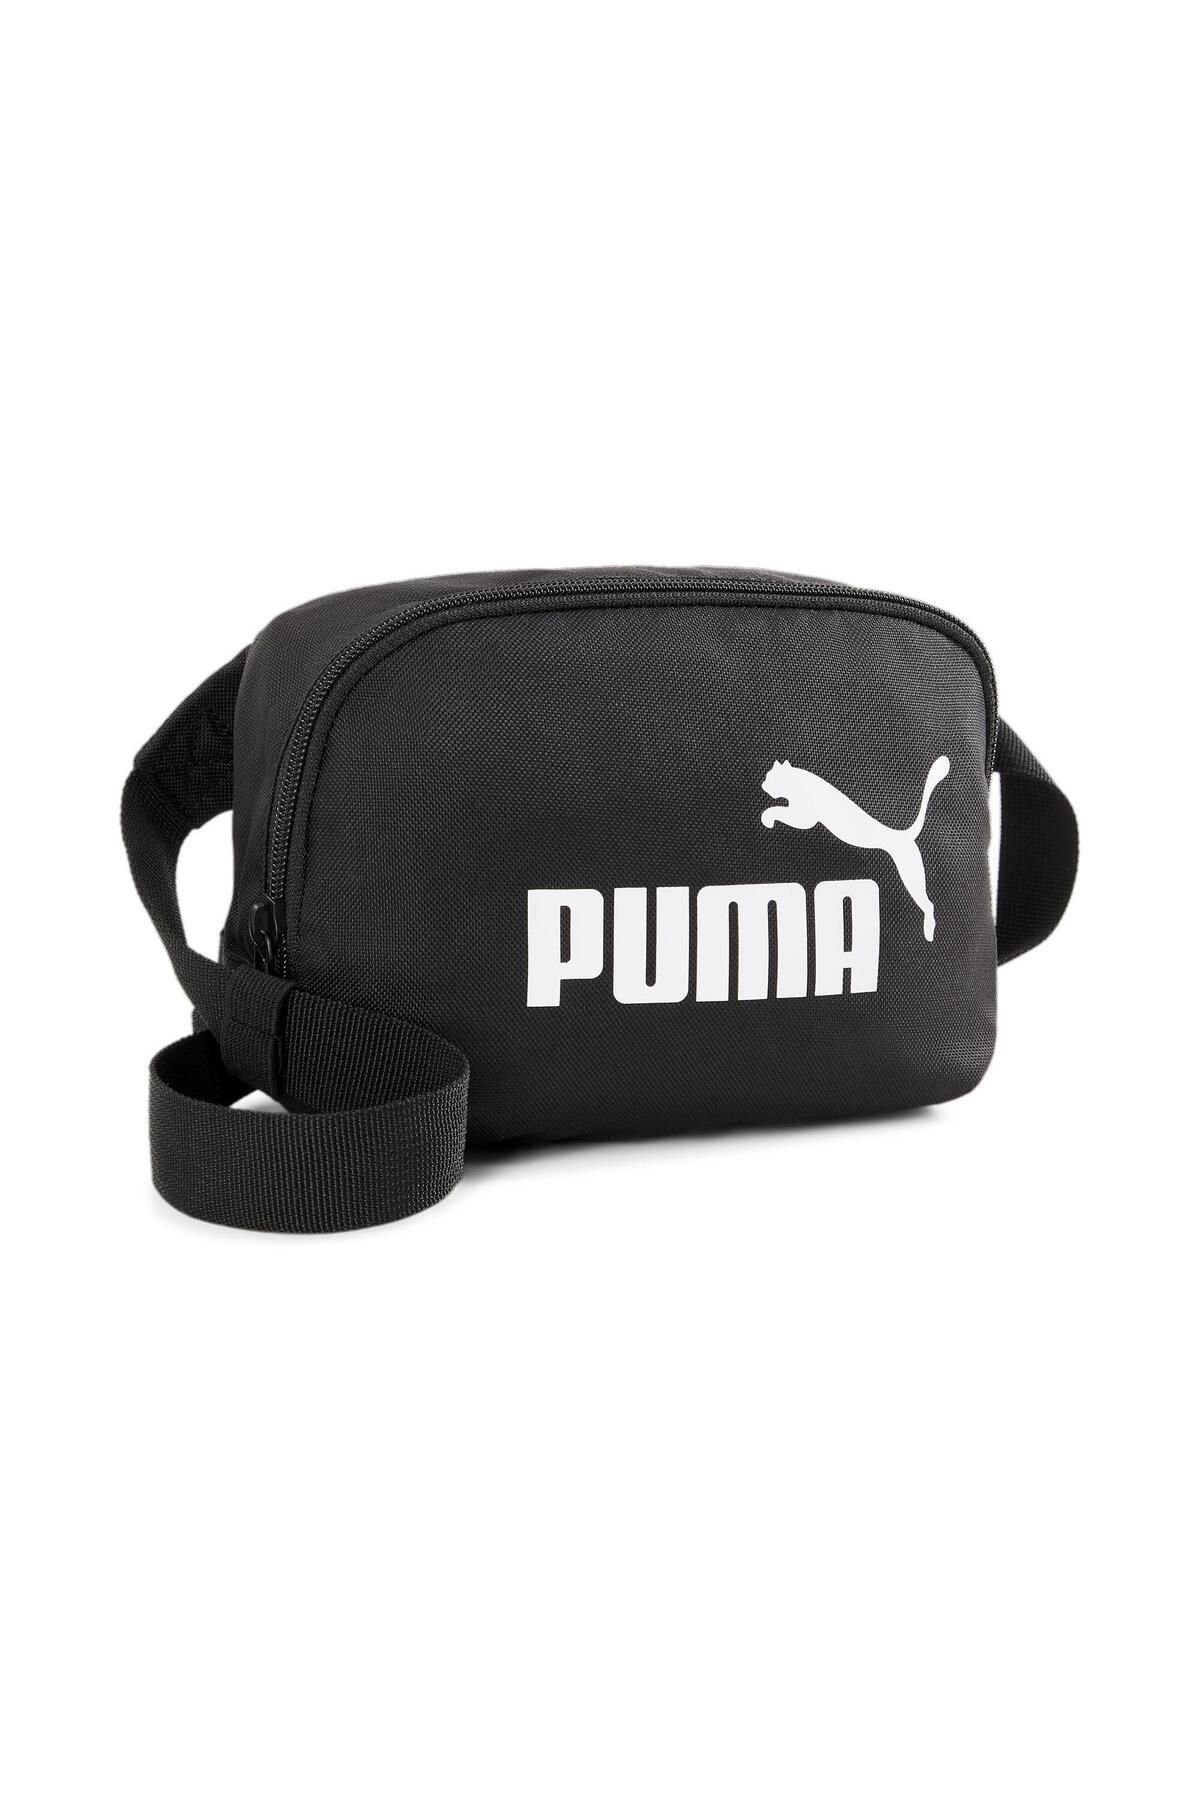 Puma Phase Waist Bag07995401